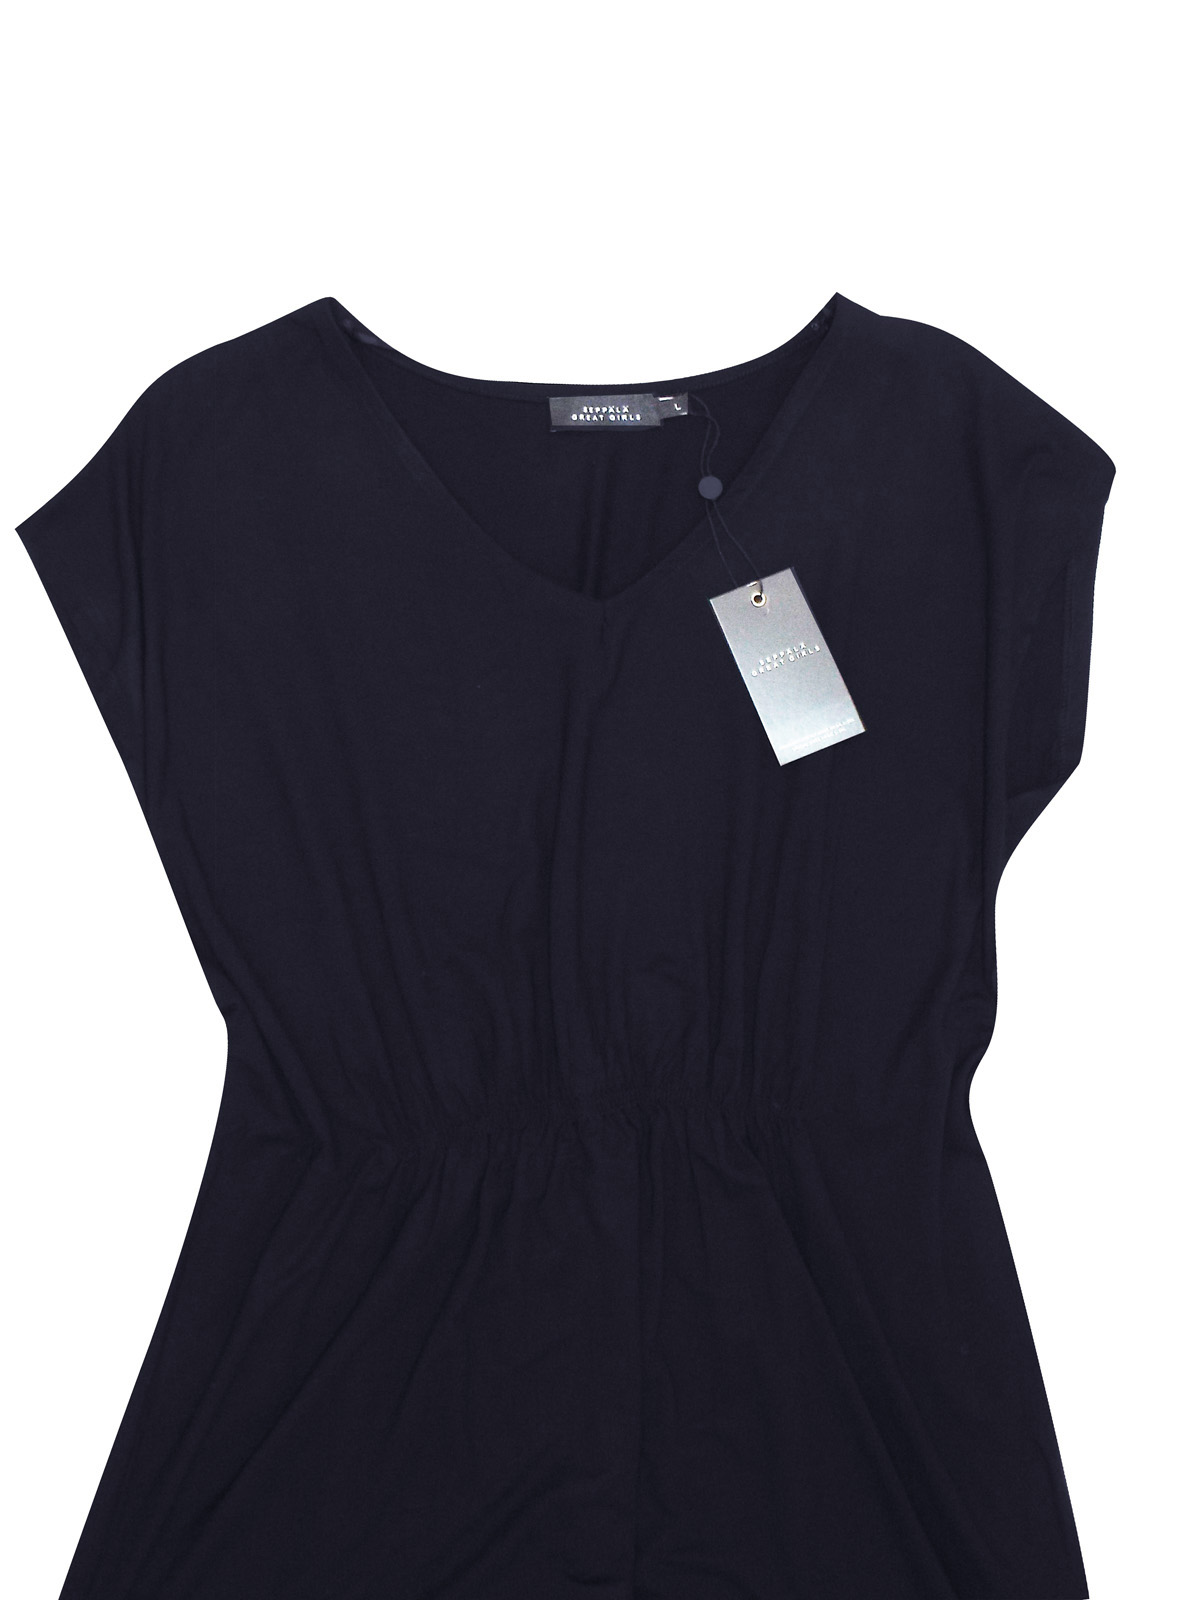 Seppala Woman - - Seppala BLACK Short Sleeve Jersey Tunic - Plus Size ...